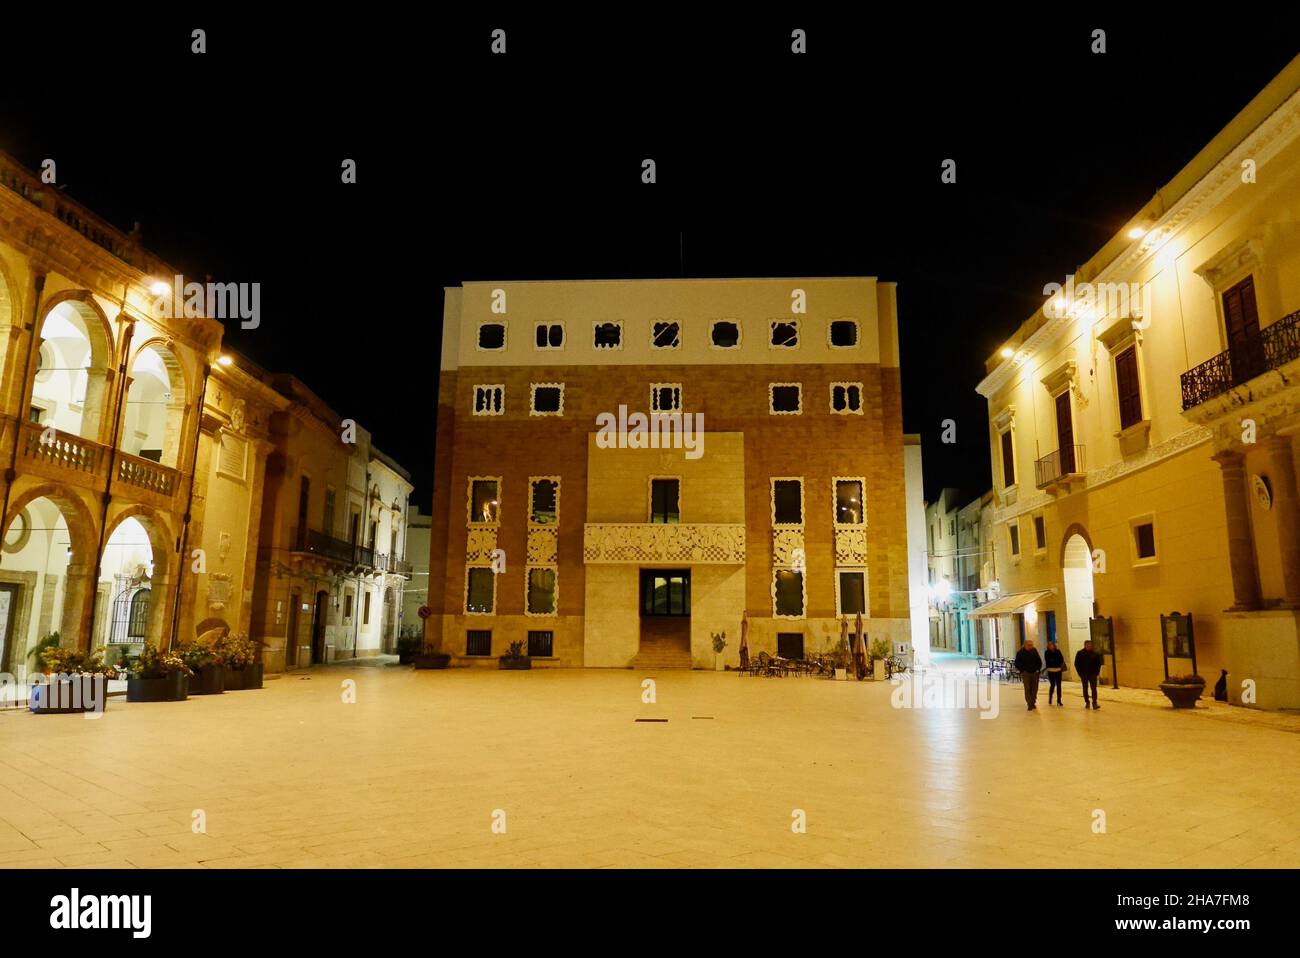 Place principale illuminée de Marsala la nuit dans la province de Trapani, Sicile, Italie. Banque D'Images